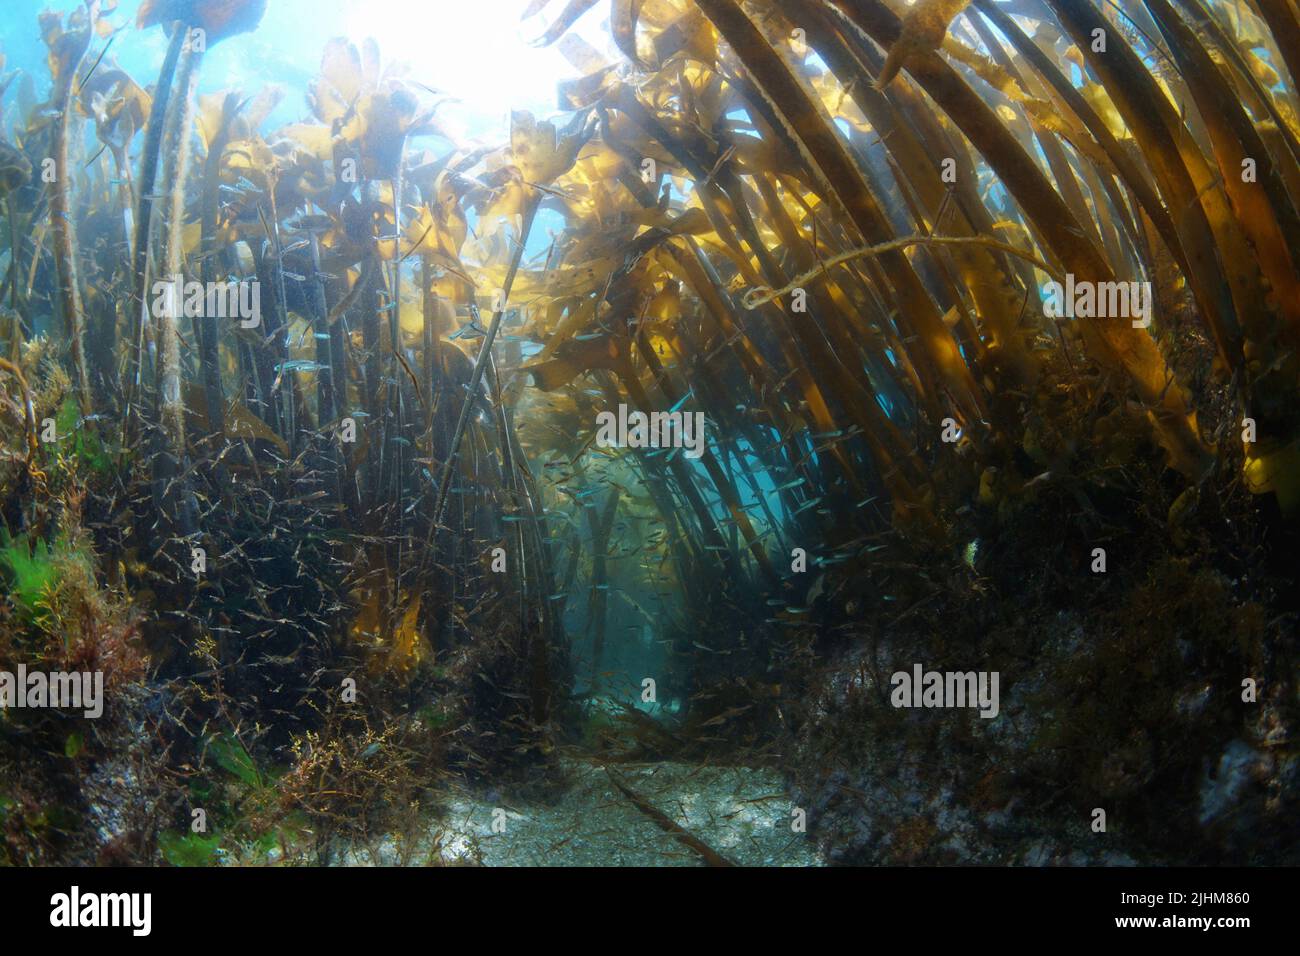 Bosque de algas kelp bajo el agua en el océano Atlántico con peces pequeños y camarones (Alga Furbellow, Saccorhiza polyschides), España, Galicia Foto de stock